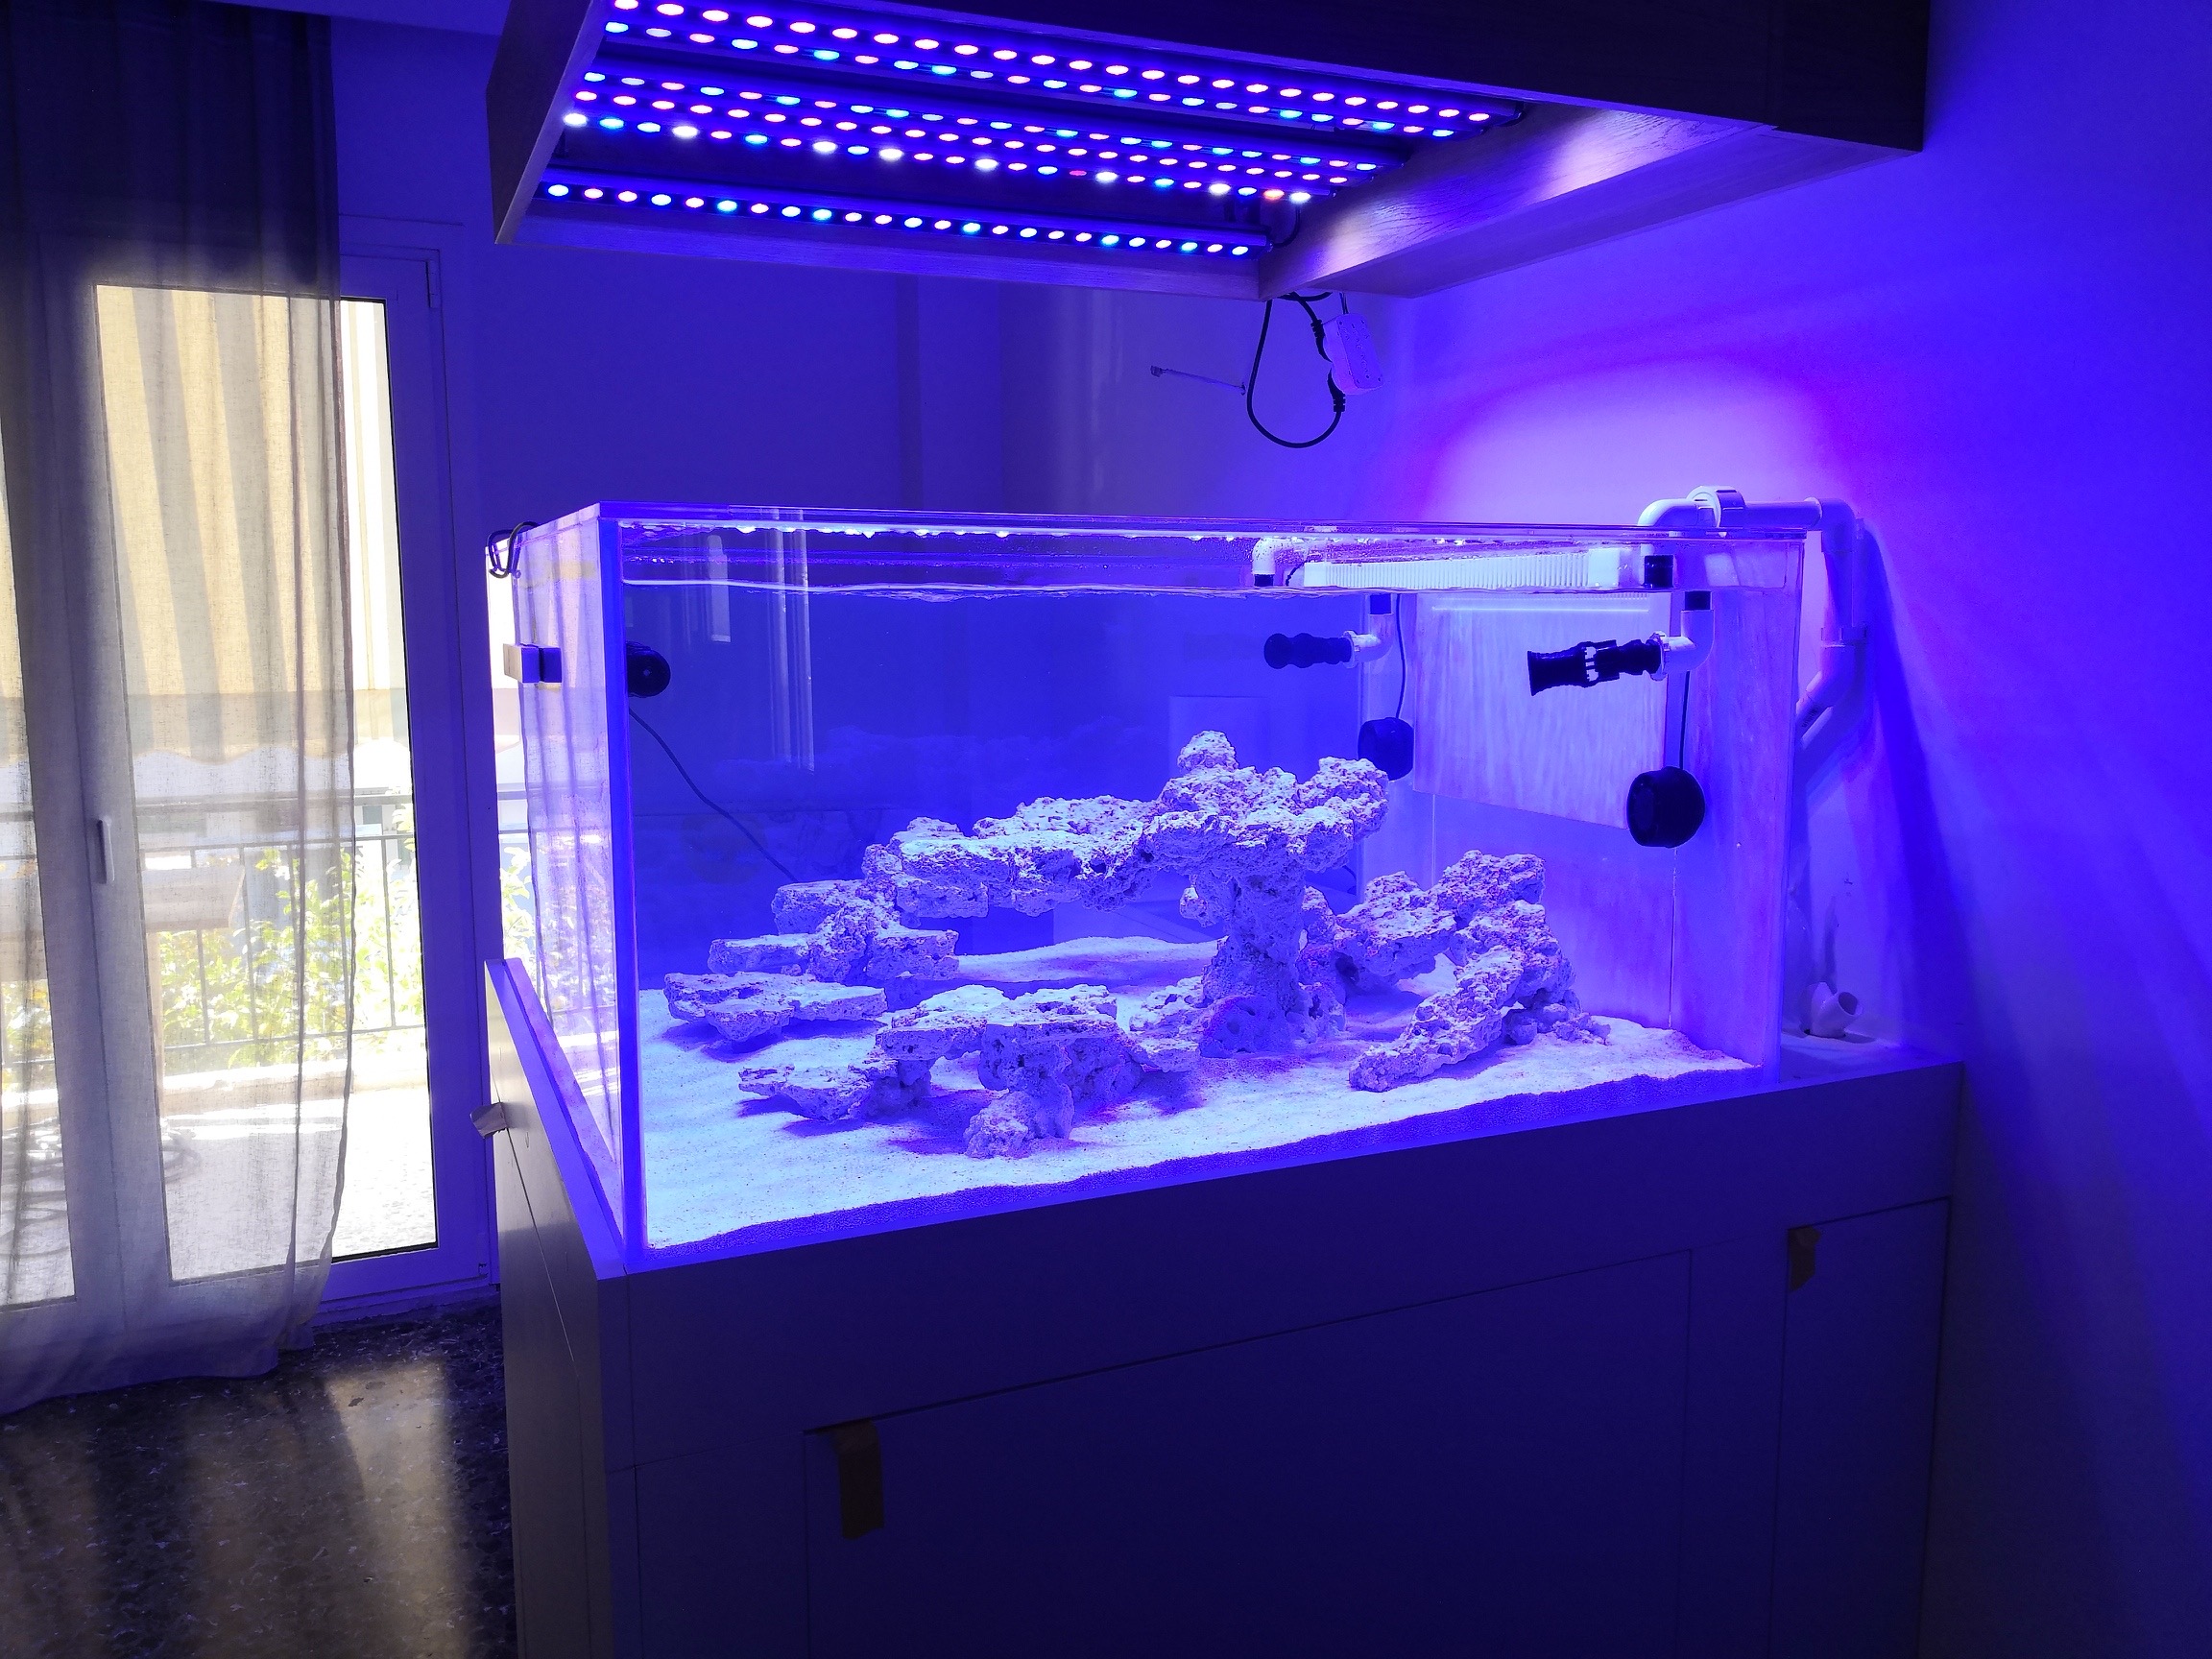 OR3-meilleur-barre-LED pour aquarium d'eau salée